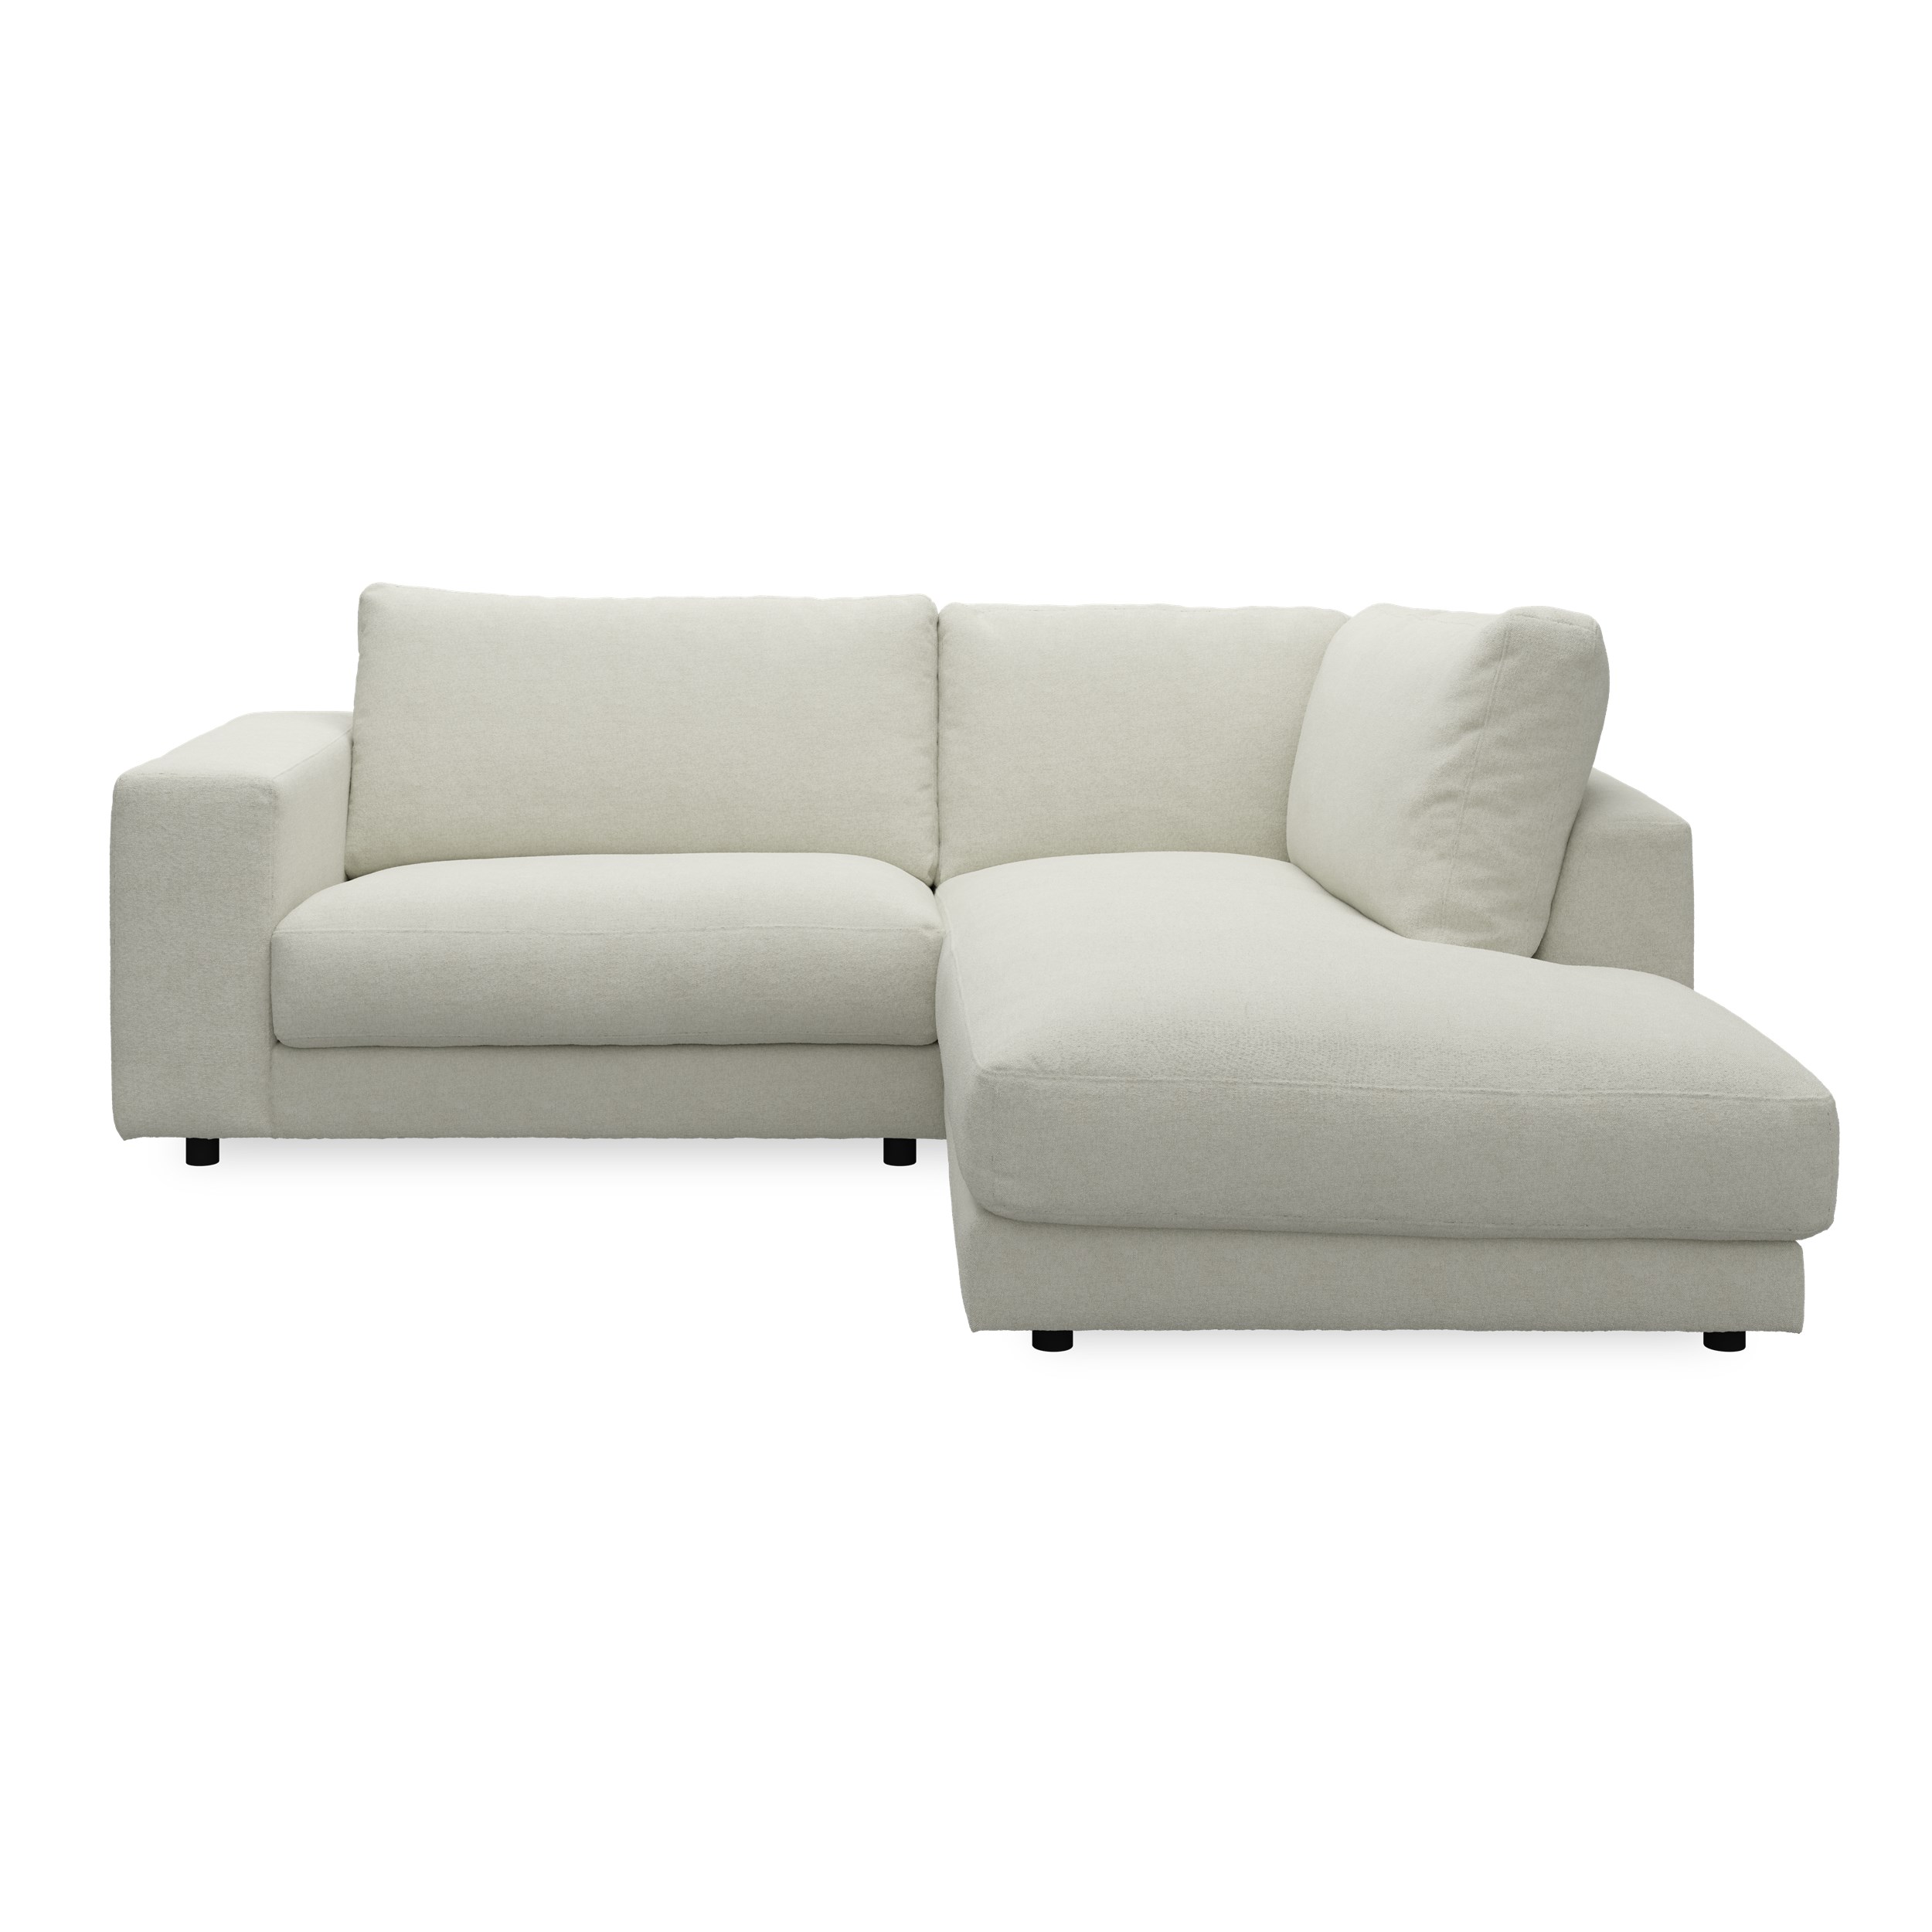 Bennent högervänd soffa med divan - Yelda Natur klädsel, ben i svart plast och S:skum/fib/din/sili R:Dun/skum